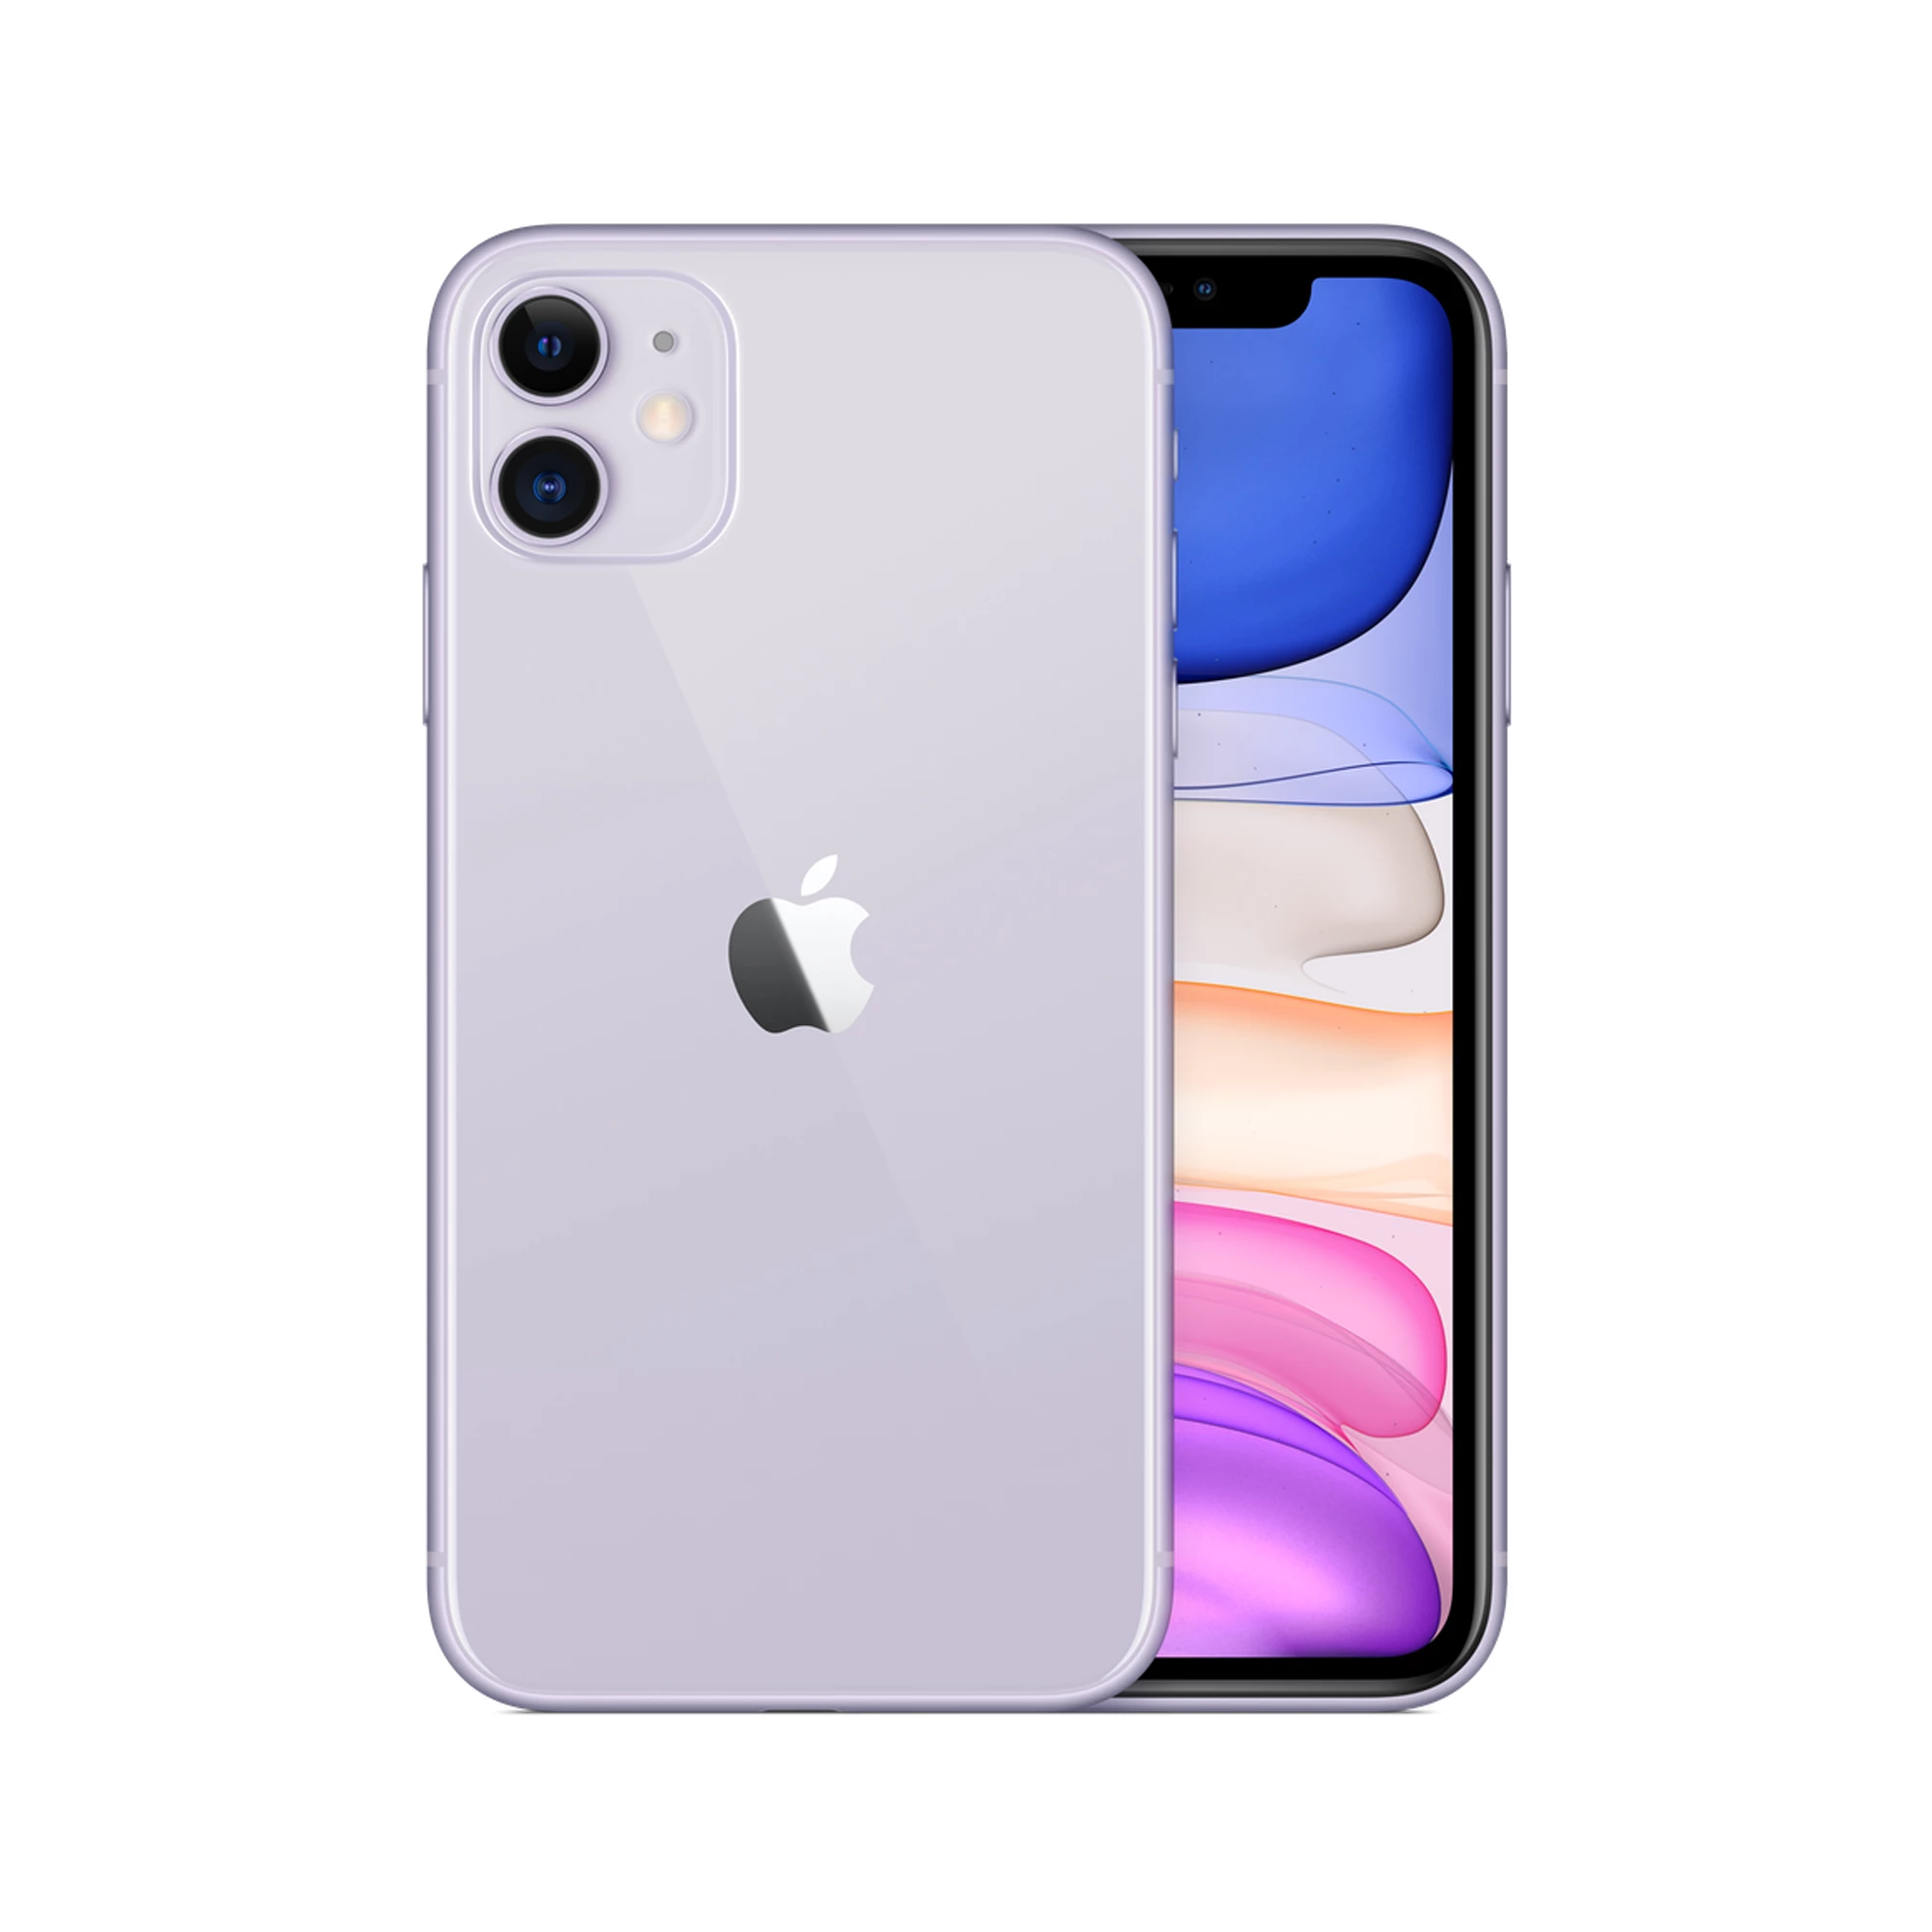 Apple iPhone 11 128GB Purple (MHD23, MHDM3) Slim Box